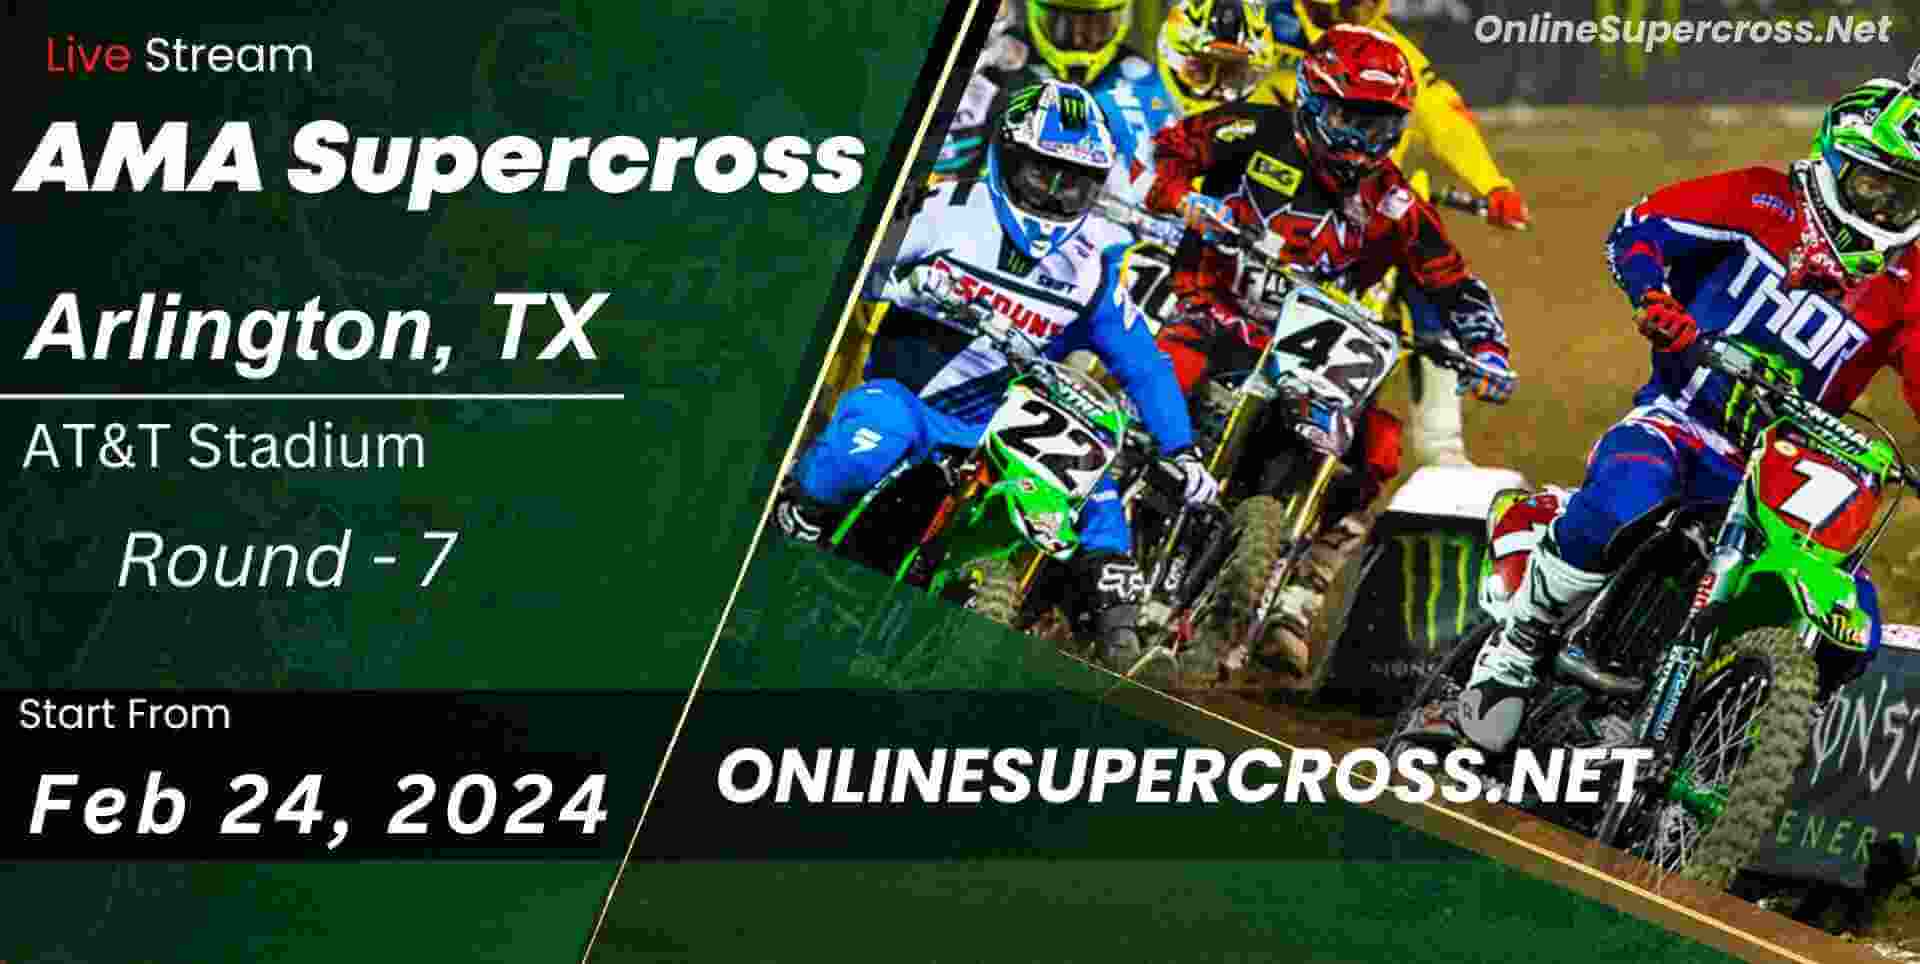 Supercross Arlington Live Stream 2019